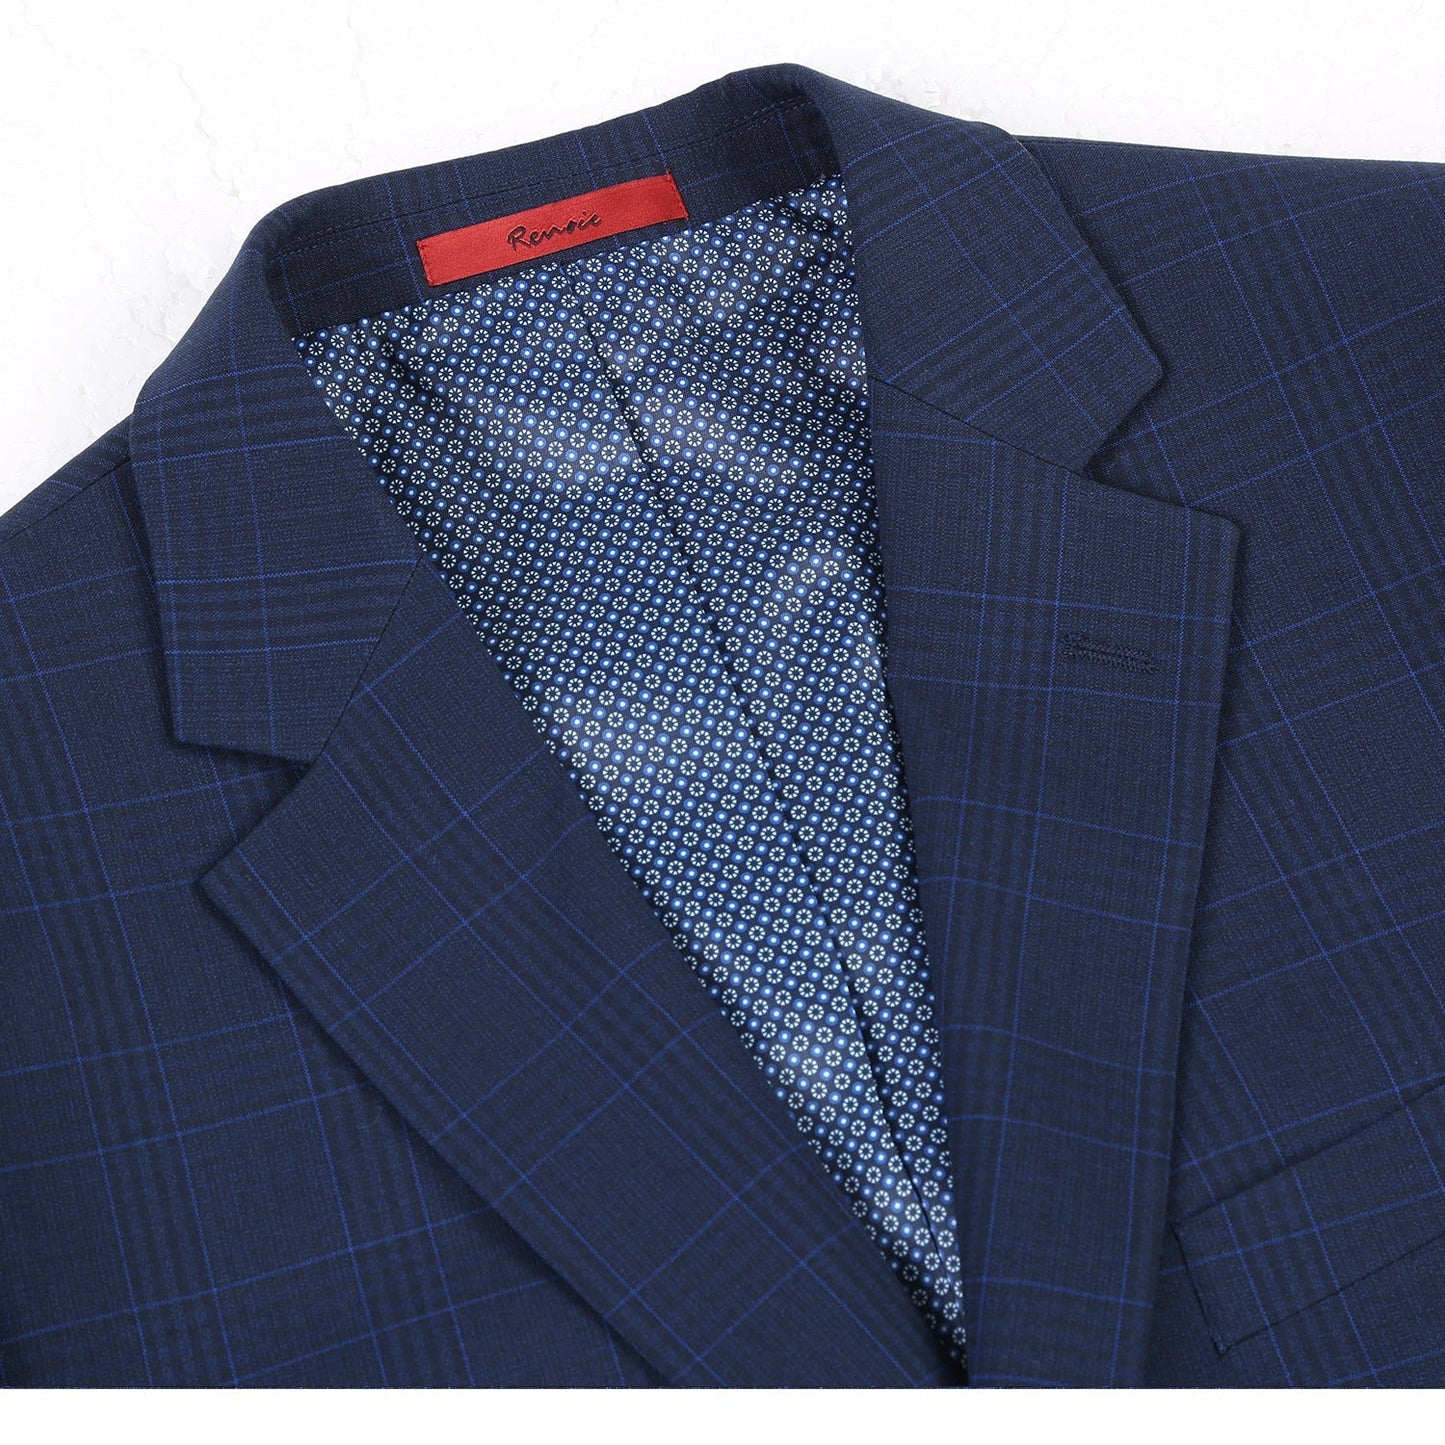 293-26 Men's Classic Fit Blue Plaid Suit